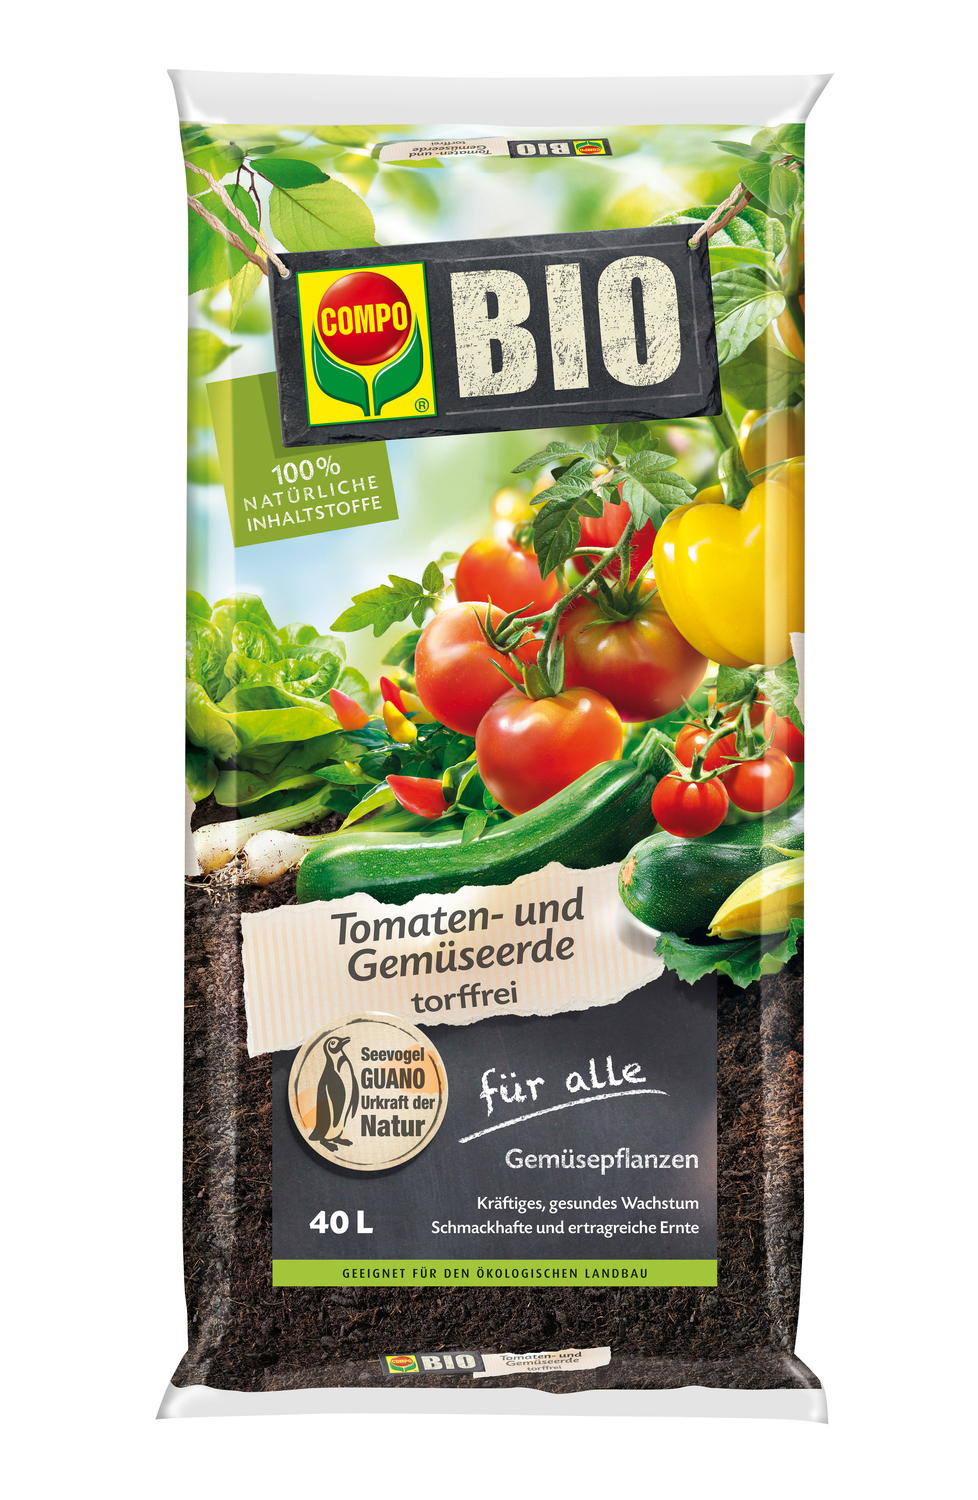 COMPO SANA Bio Tomaten- und Gemüseerde 40 Liter